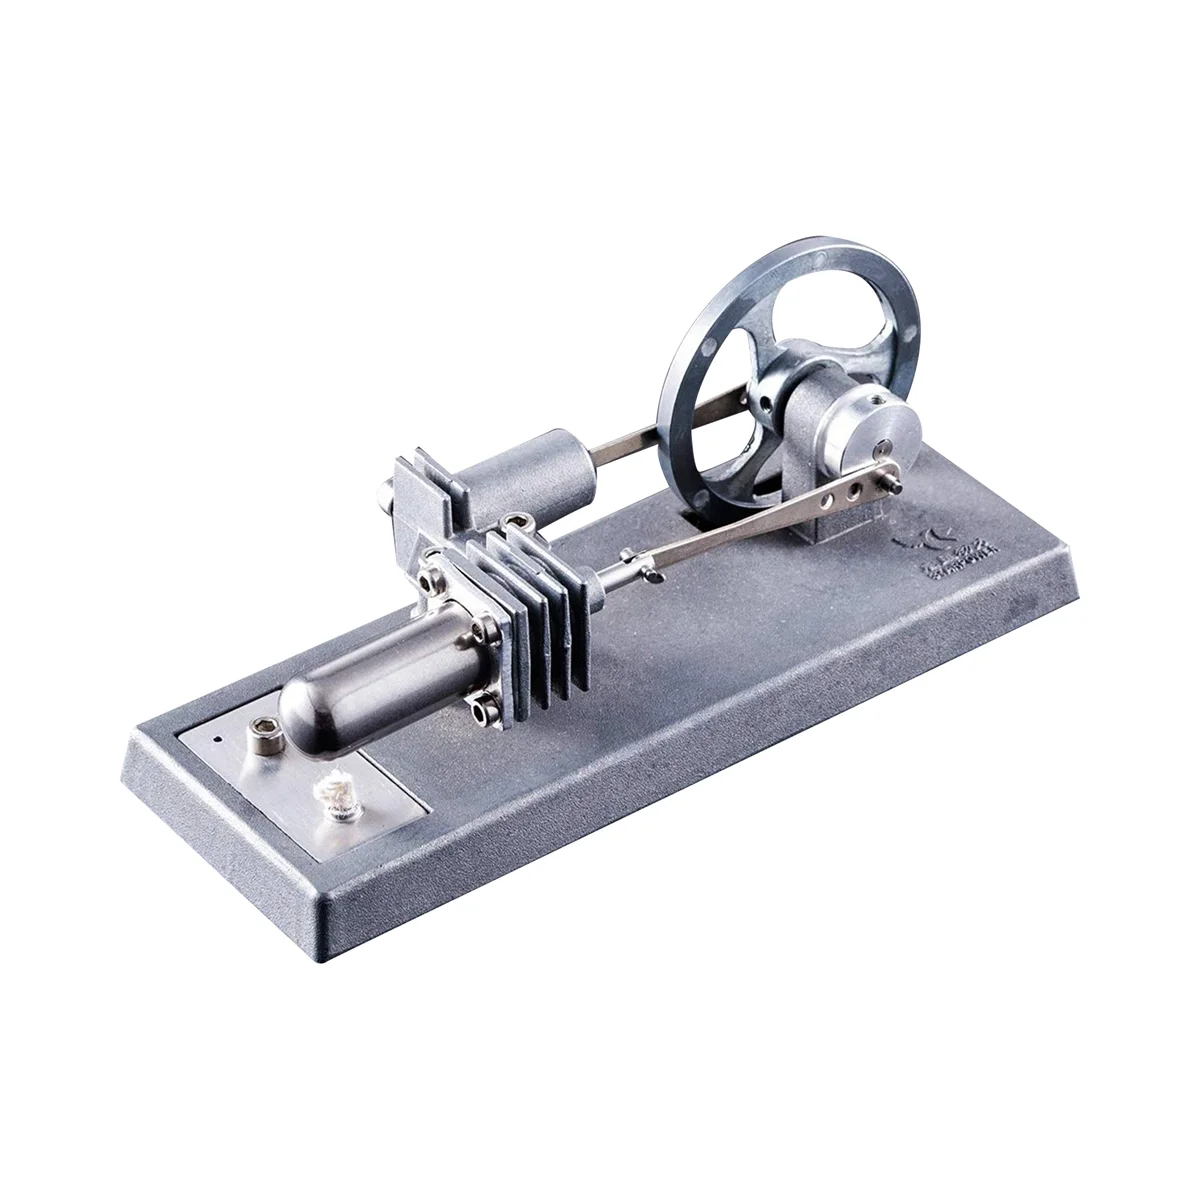 

Модель двигателя Стирлинга для сборки своими руками, строительная модель, образовательная модель для тепла, игрушки для научных экспериментов